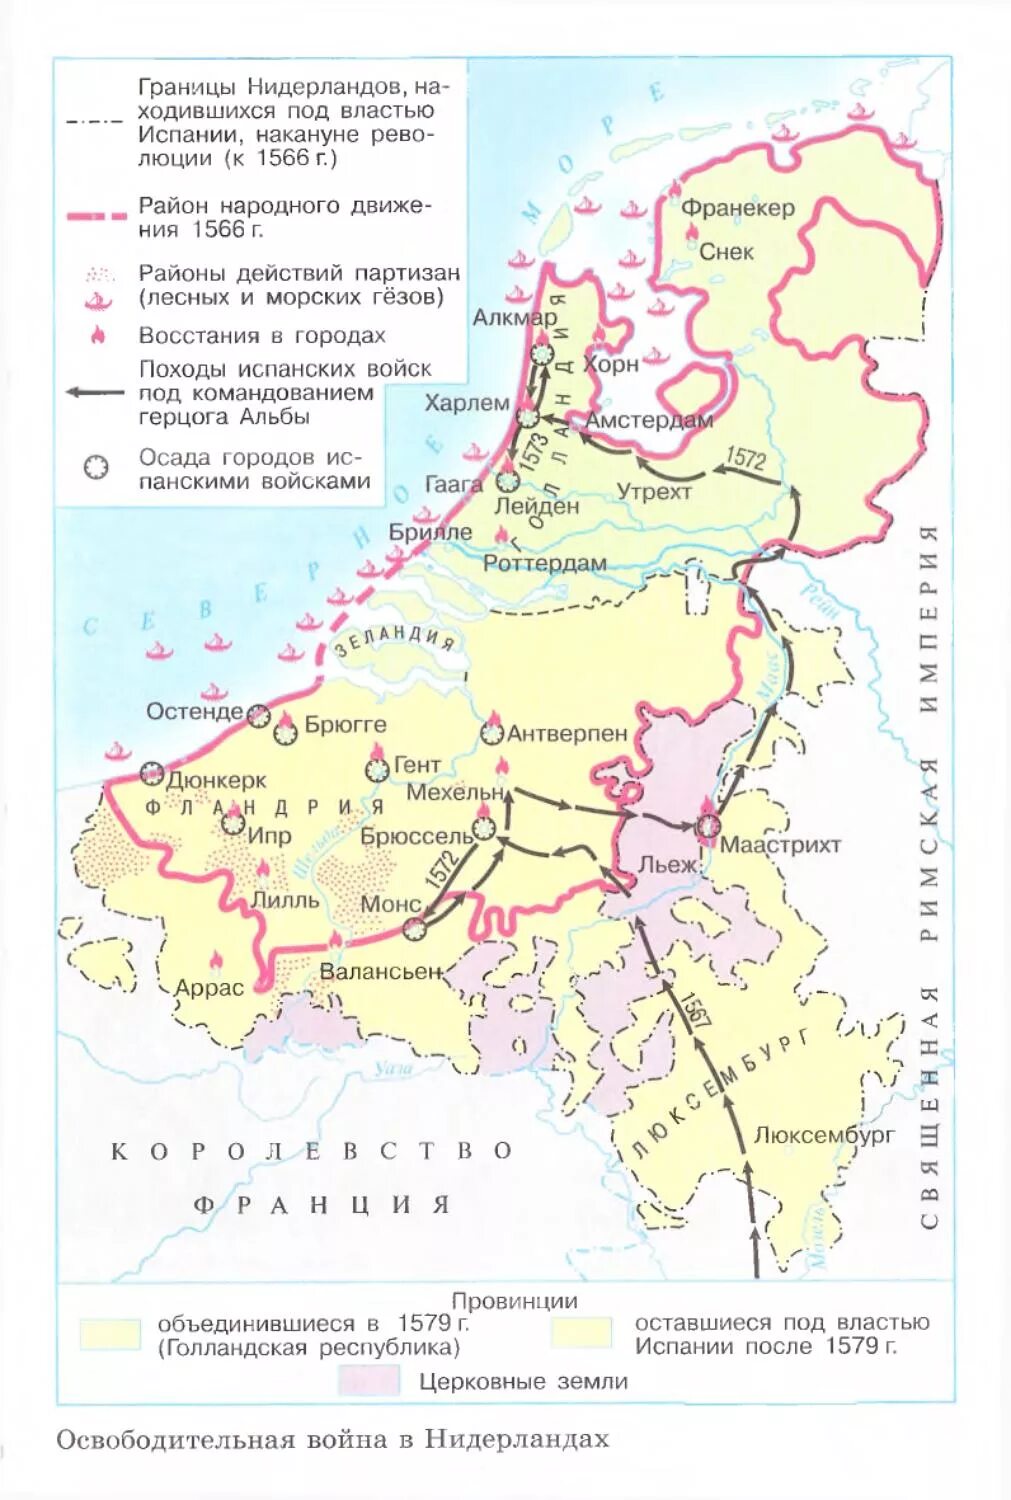 Нидерландская буржуазная. Карта Нидерландская буржуазная революция 1566-1609. Нидерландская буржуазная революция в 16 веке контурная карта. Карта нидерландской буржуазной революции в 16 веке. Нидерландская буржуазная революция карта.